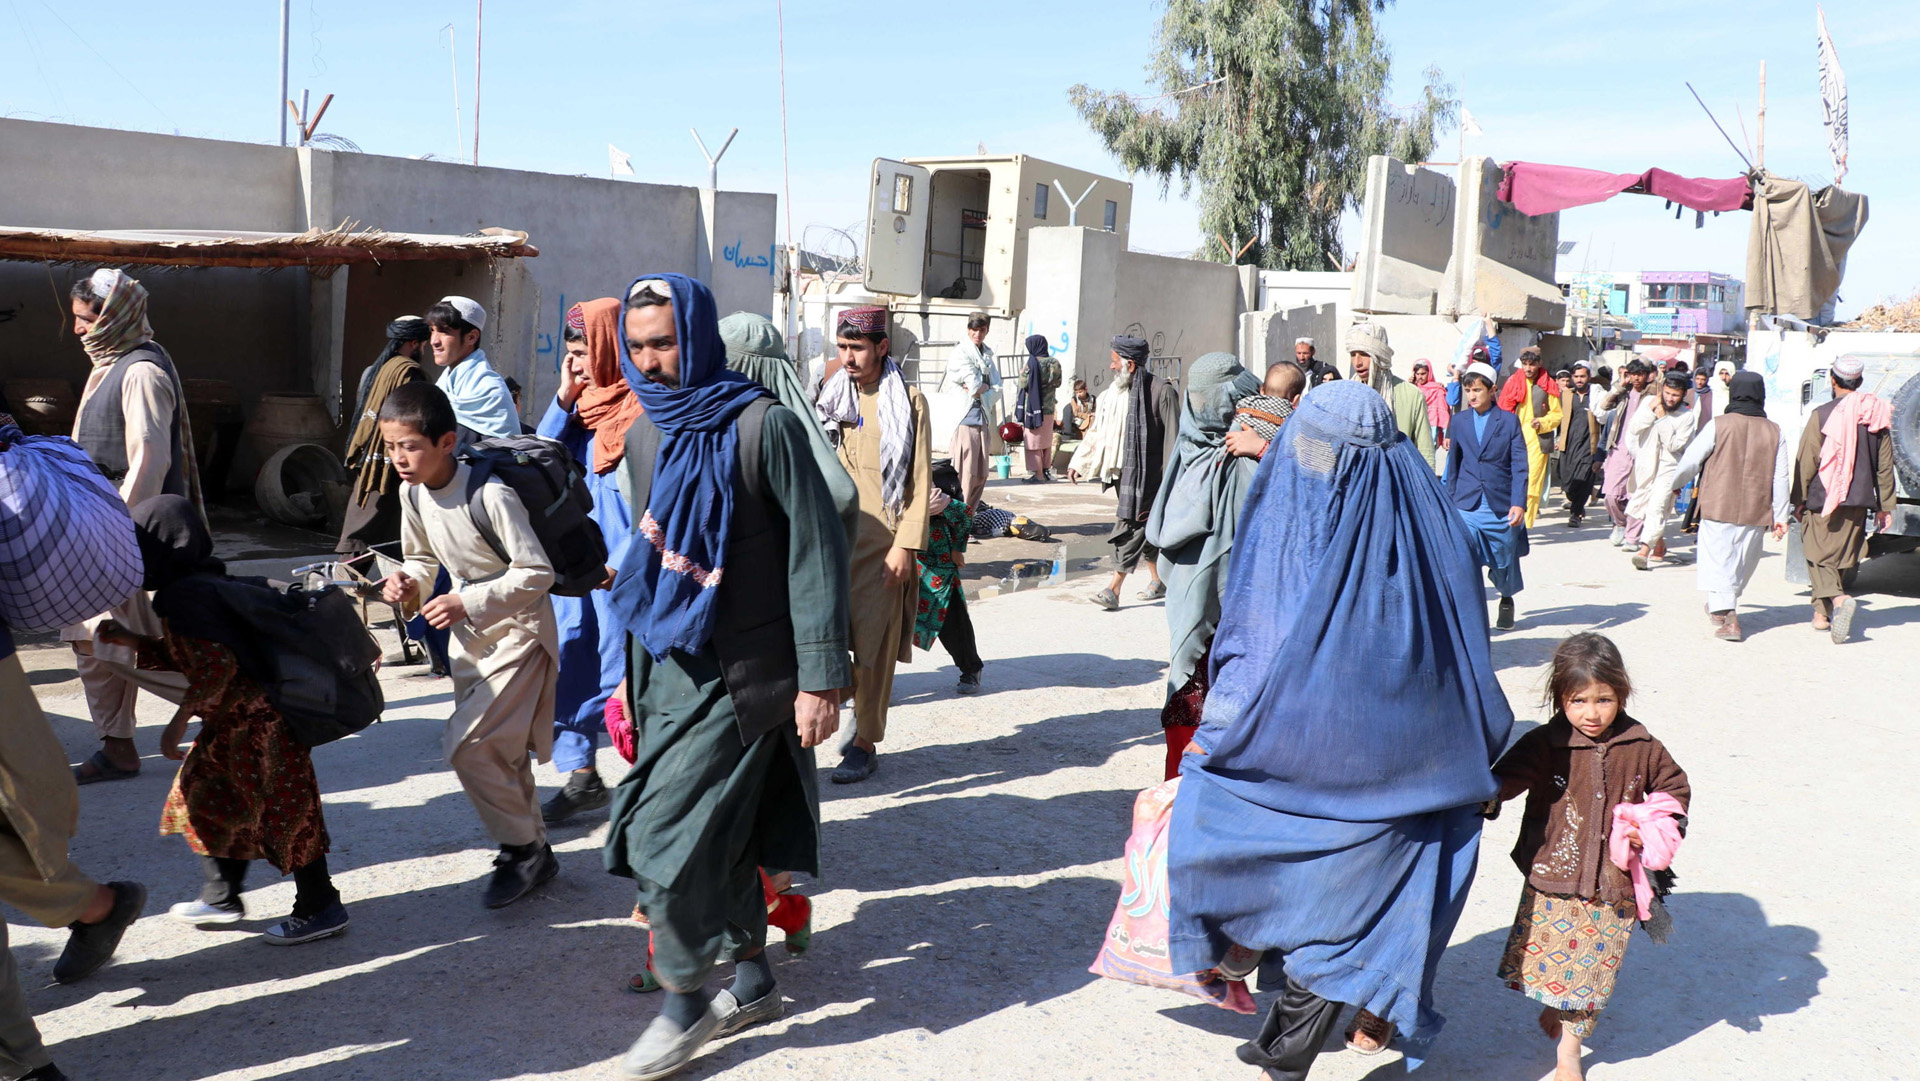 Catastrofe umanitaria in Afghanistan. Genitori costretti a vendere organi e figli per sopravvivere